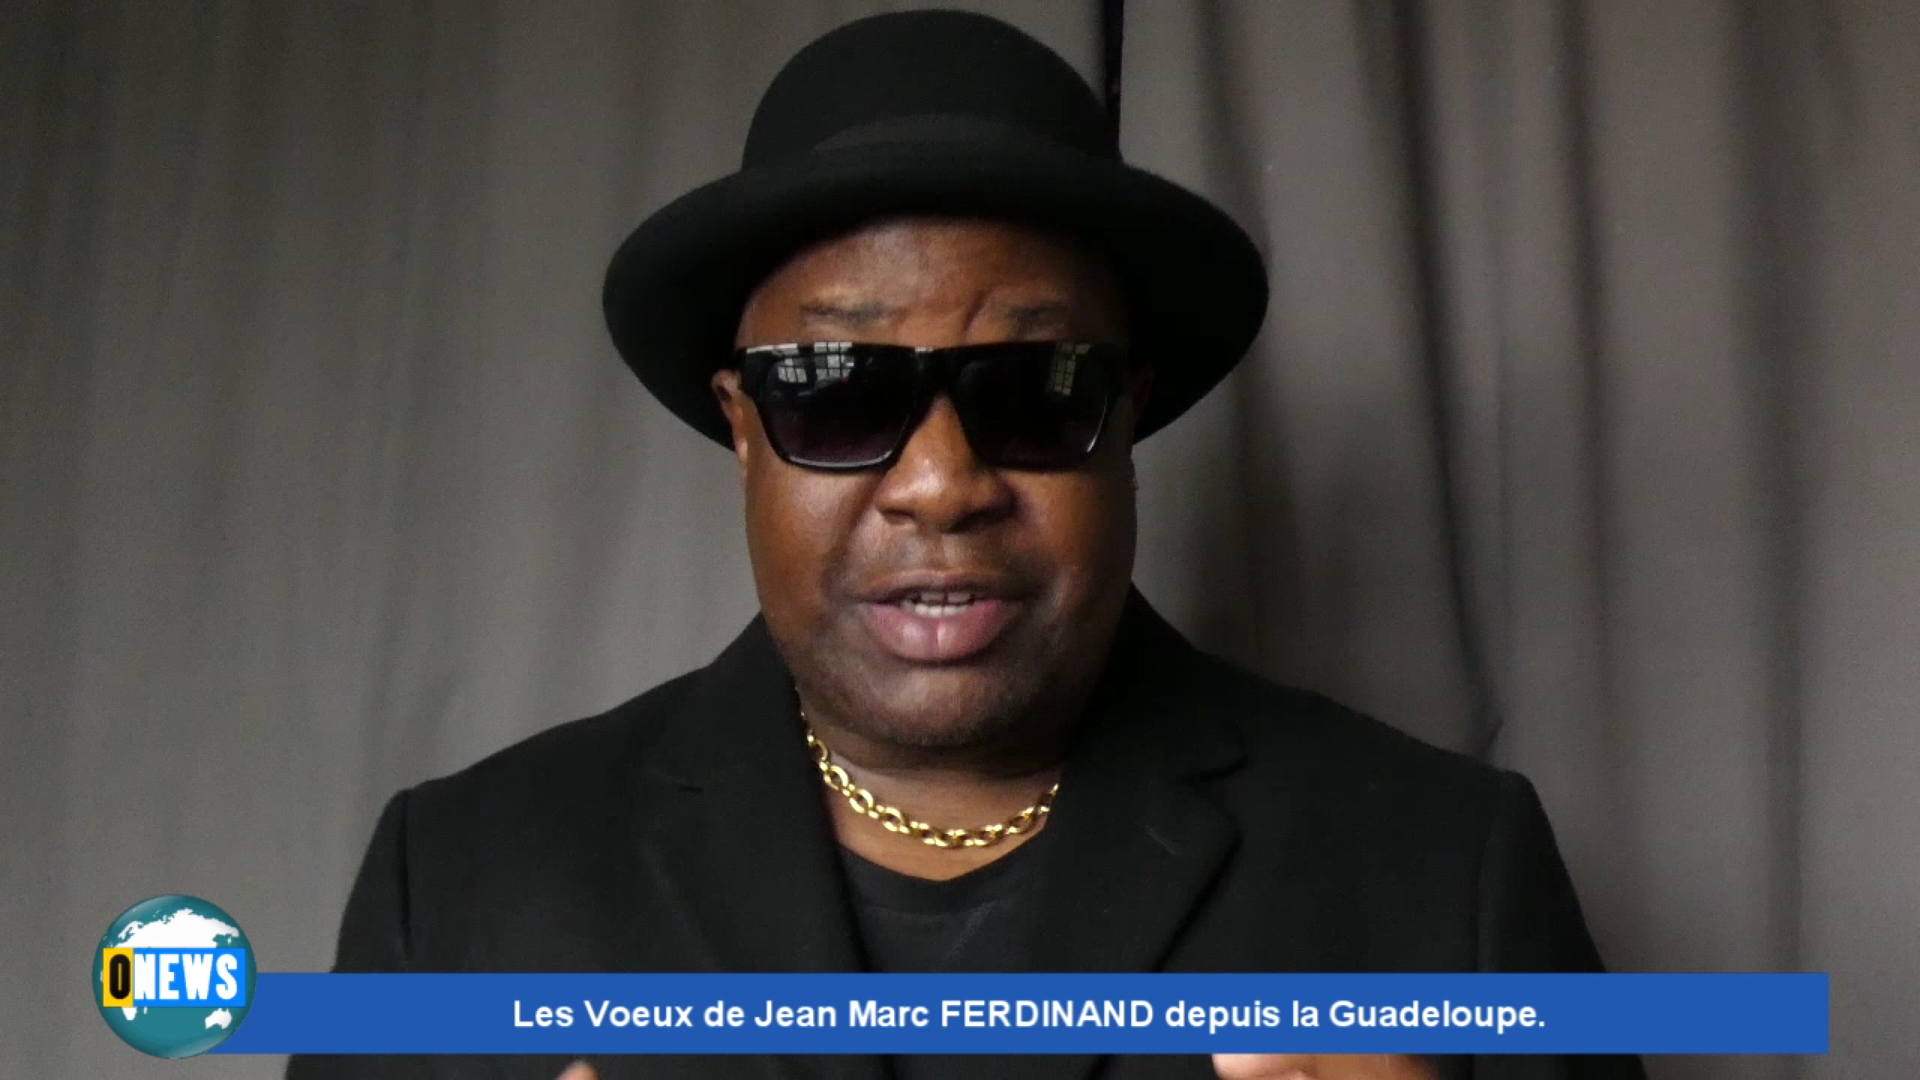 Onews Guadeloupe. Les Voeux de Jean Marc FERDINAND depuis la Guadeloupe.